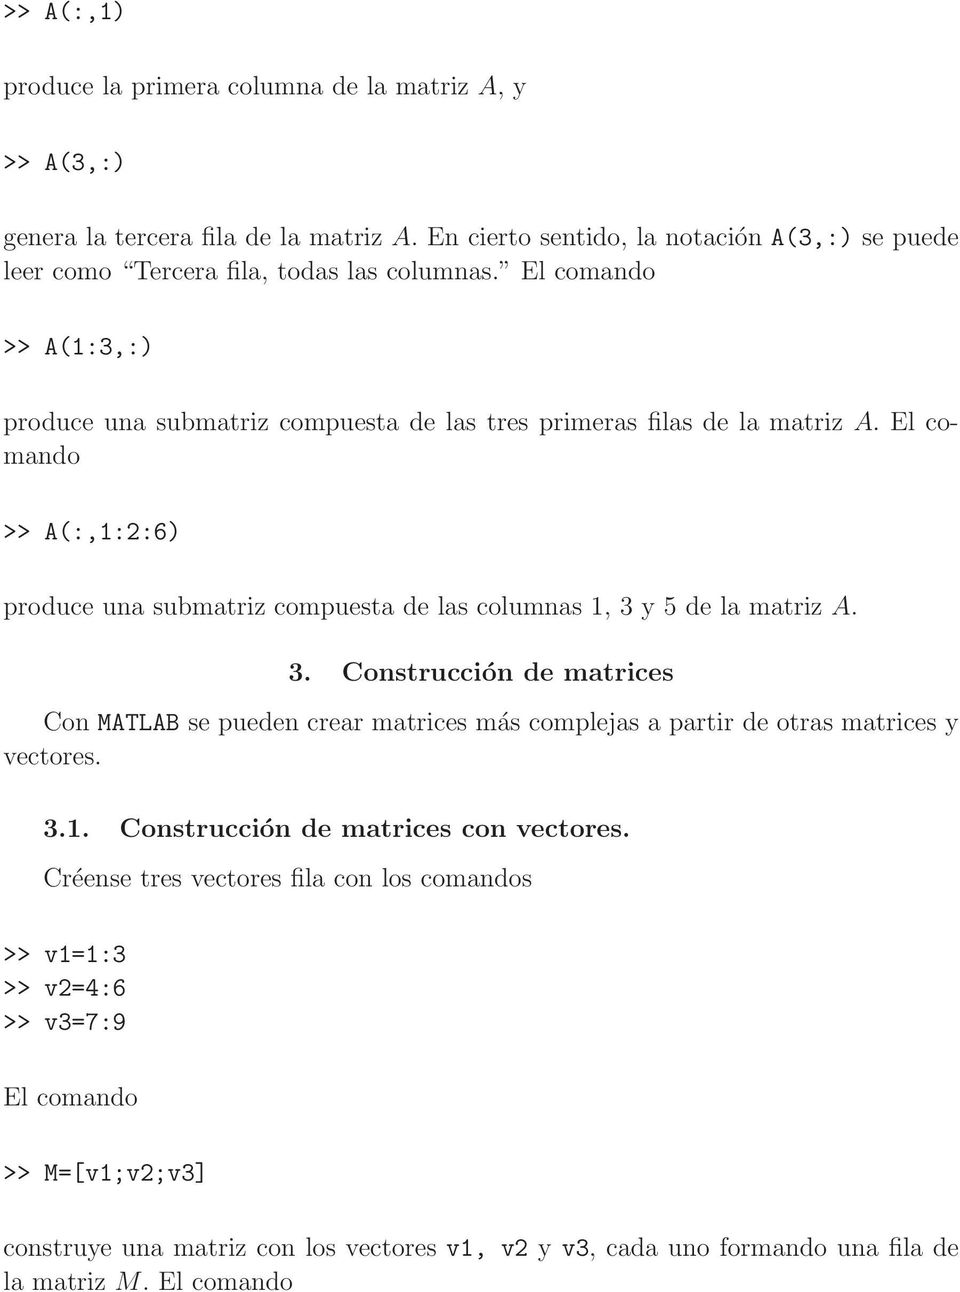 El comando >> A(:,1:2:6) produce una submatriz compuesta de las columnas 1, 3 